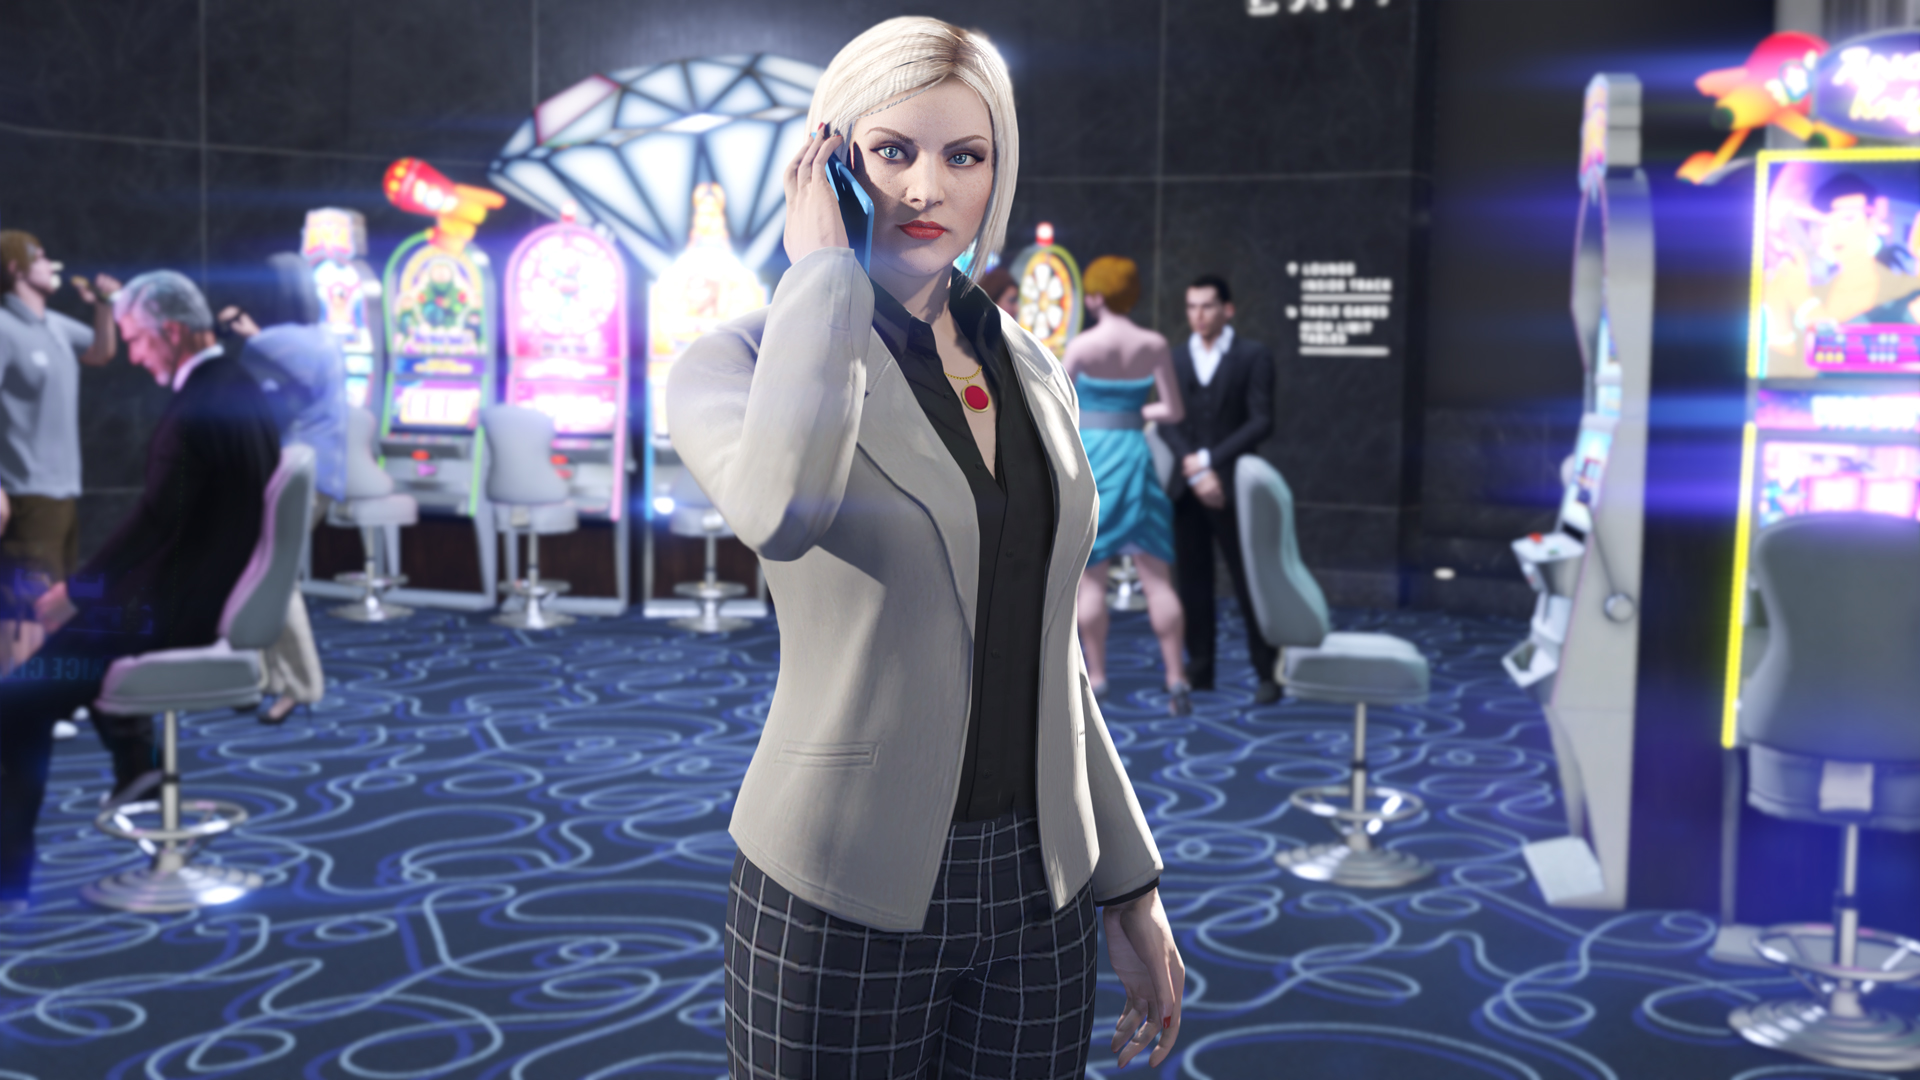 Торжественное открытие: казино-отель Diamond начинает работу в GTA Online